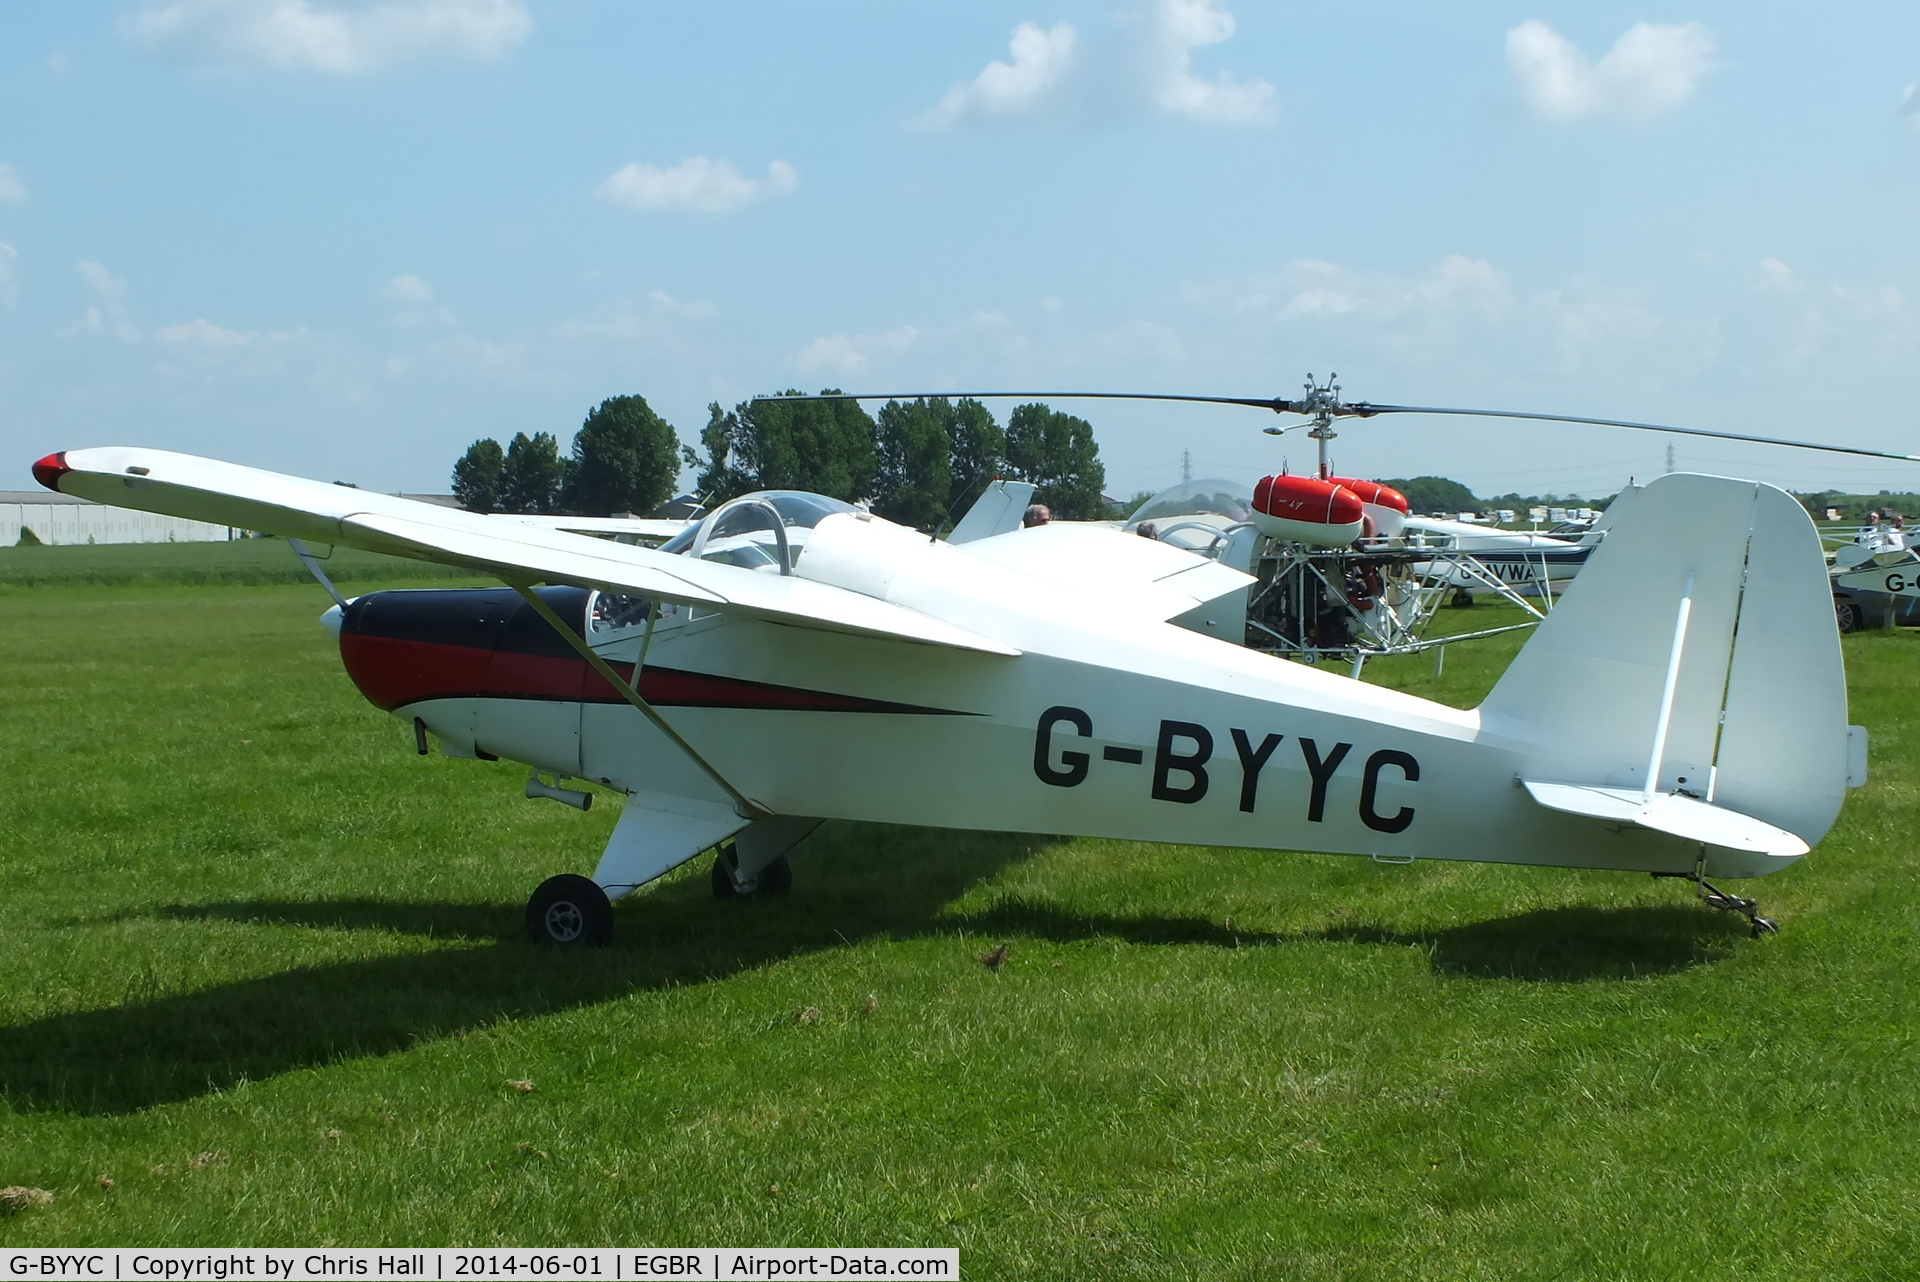 G-BYYC, 2000 Hapi Cygnet SF-2A C/N PFA 182-12311, at Breighton's Open Cockpit & Biplane Fly-in, 2014